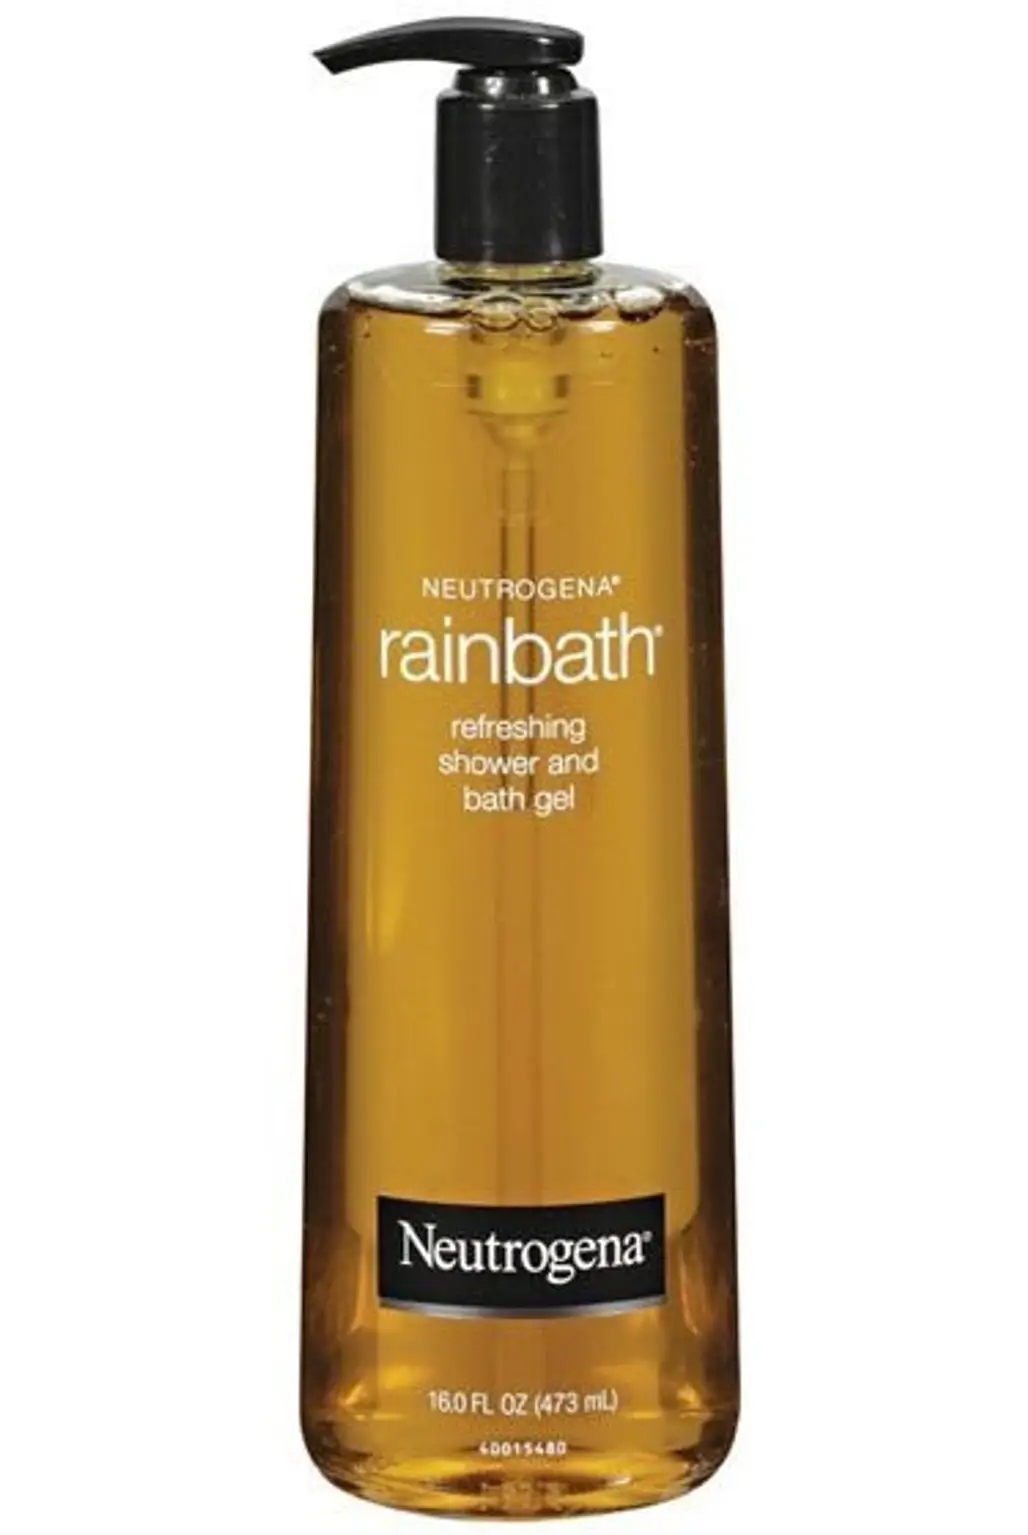 Rainbath Shower and Bath Gel